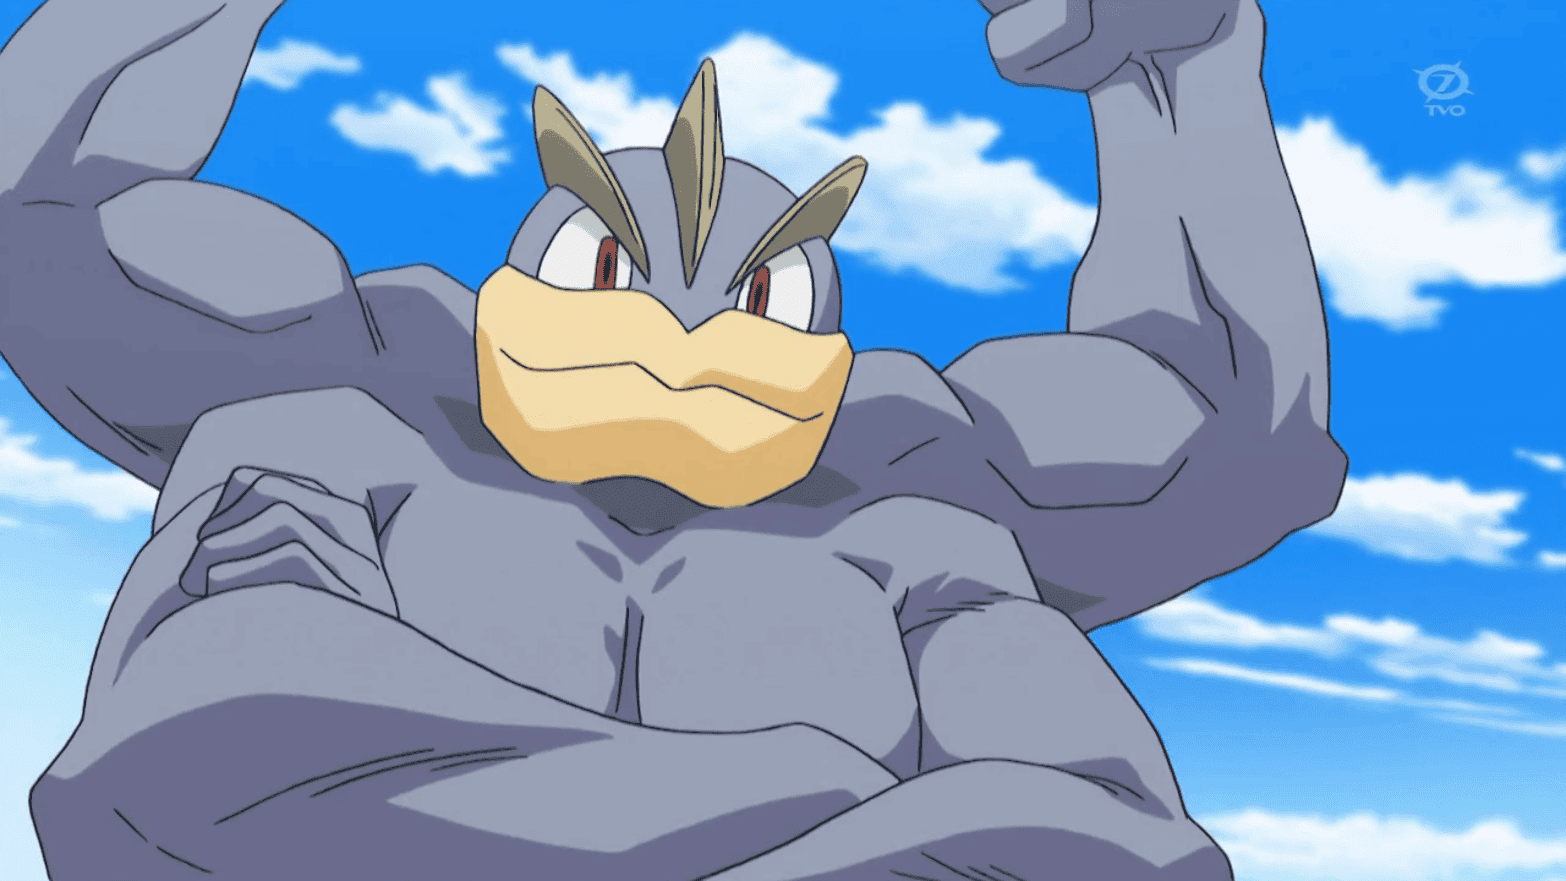 Este fan-art de Pokémon muestra cómo se vería a Machamp sin su par de brazos extra